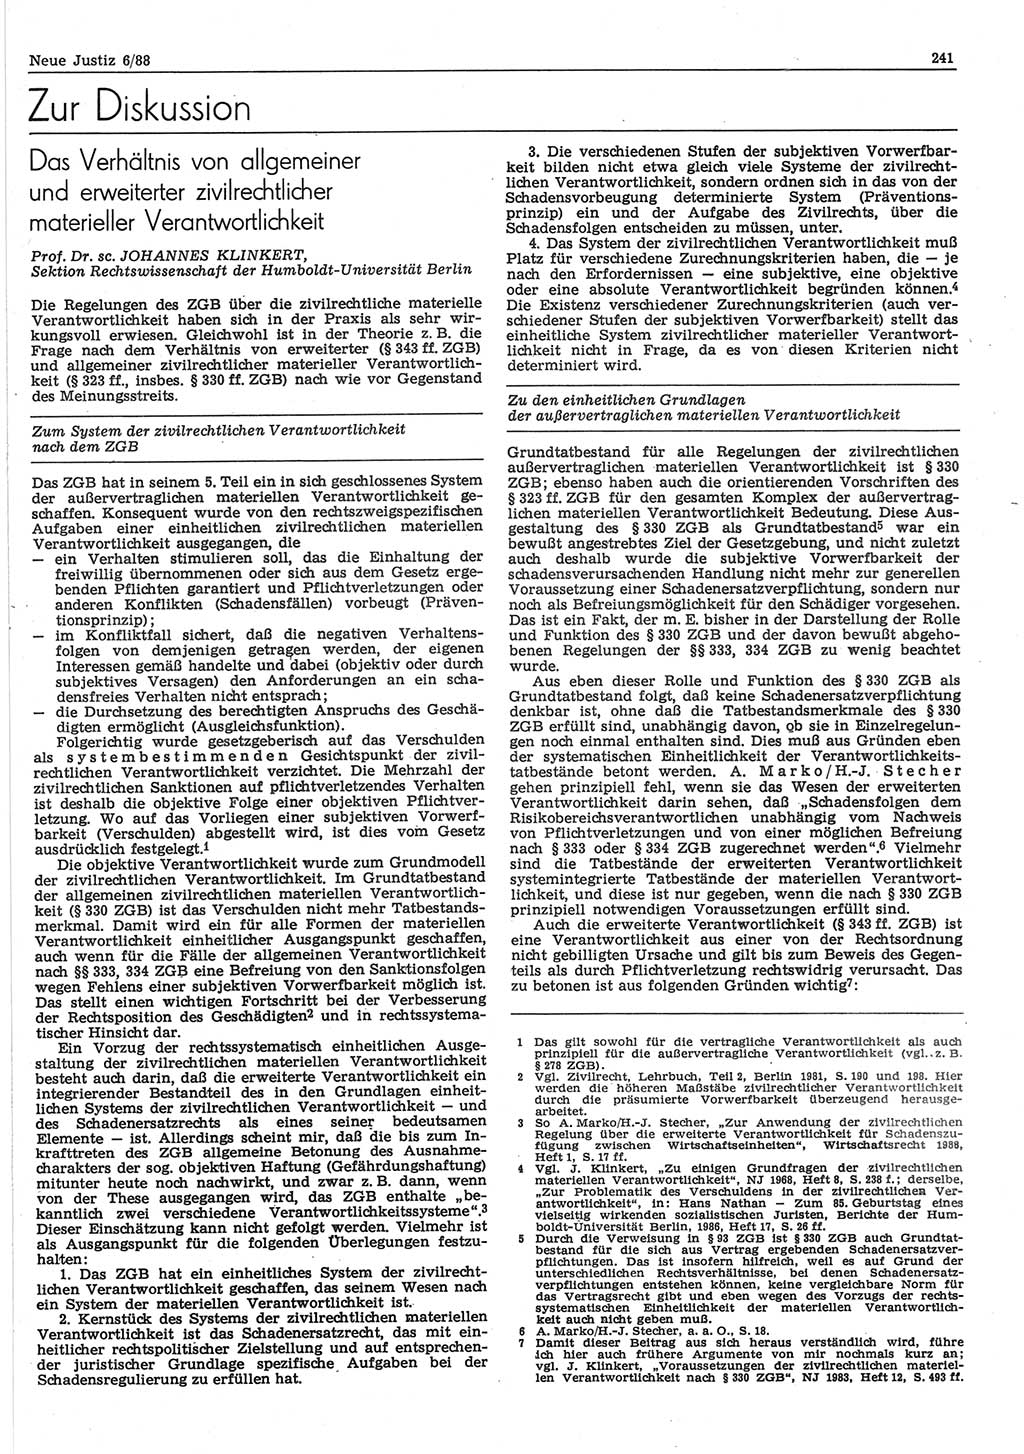 Neue Justiz (NJ), Zeitschrift für sozialistisches Recht und Gesetzlichkeit [Deutsche Demokratische Republik (DDR)], 42. Jahrgang 1988, Seite 241 (NJ DDR 1988, S. 241)